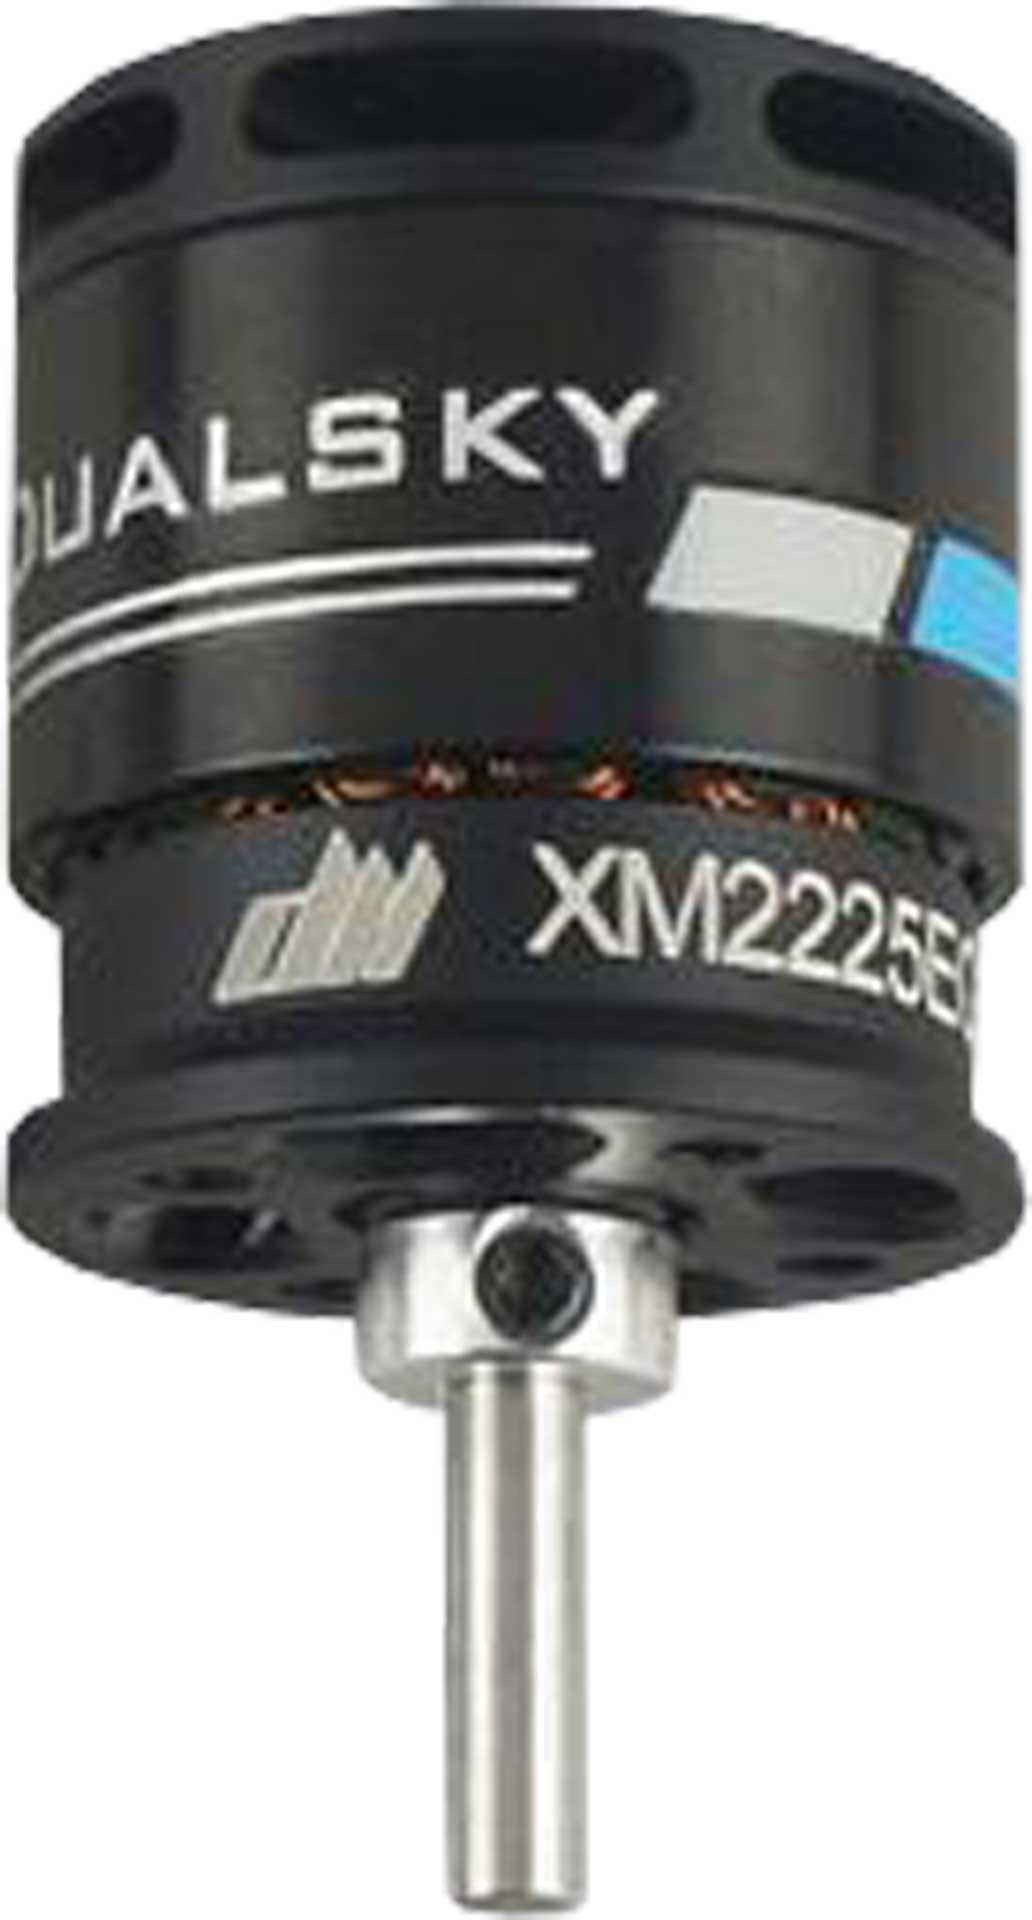 DUALSKY XMotor XM2225EG-16 K/V 2300 177,6W Brushless Motor